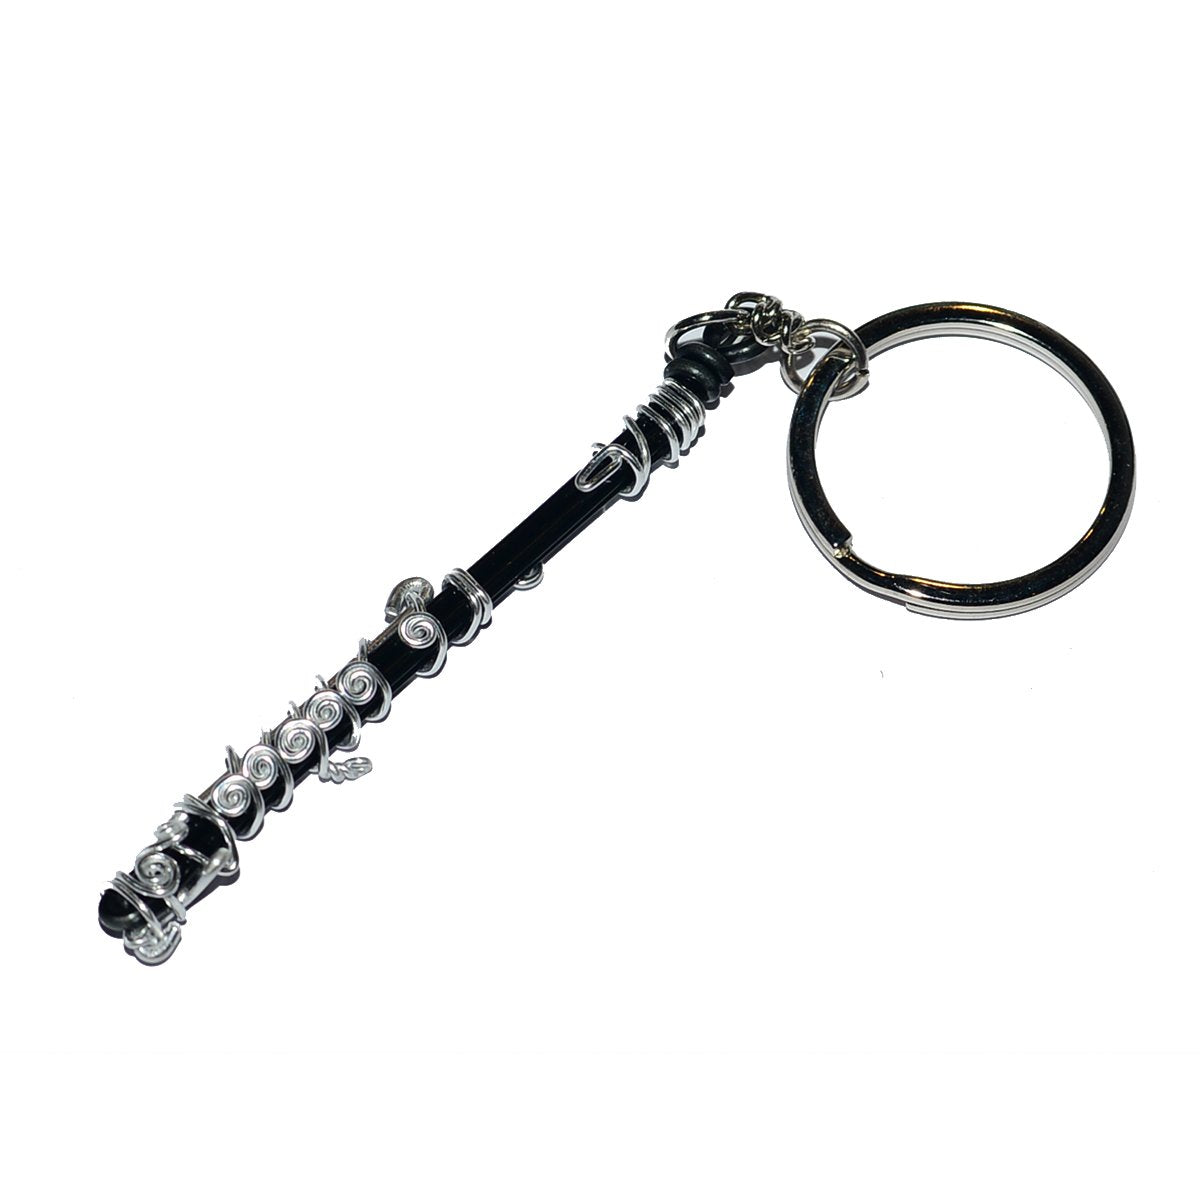 Wire Art Walker - Piccolo Keychain-Accessories-Wire Art Walker-Music Elements